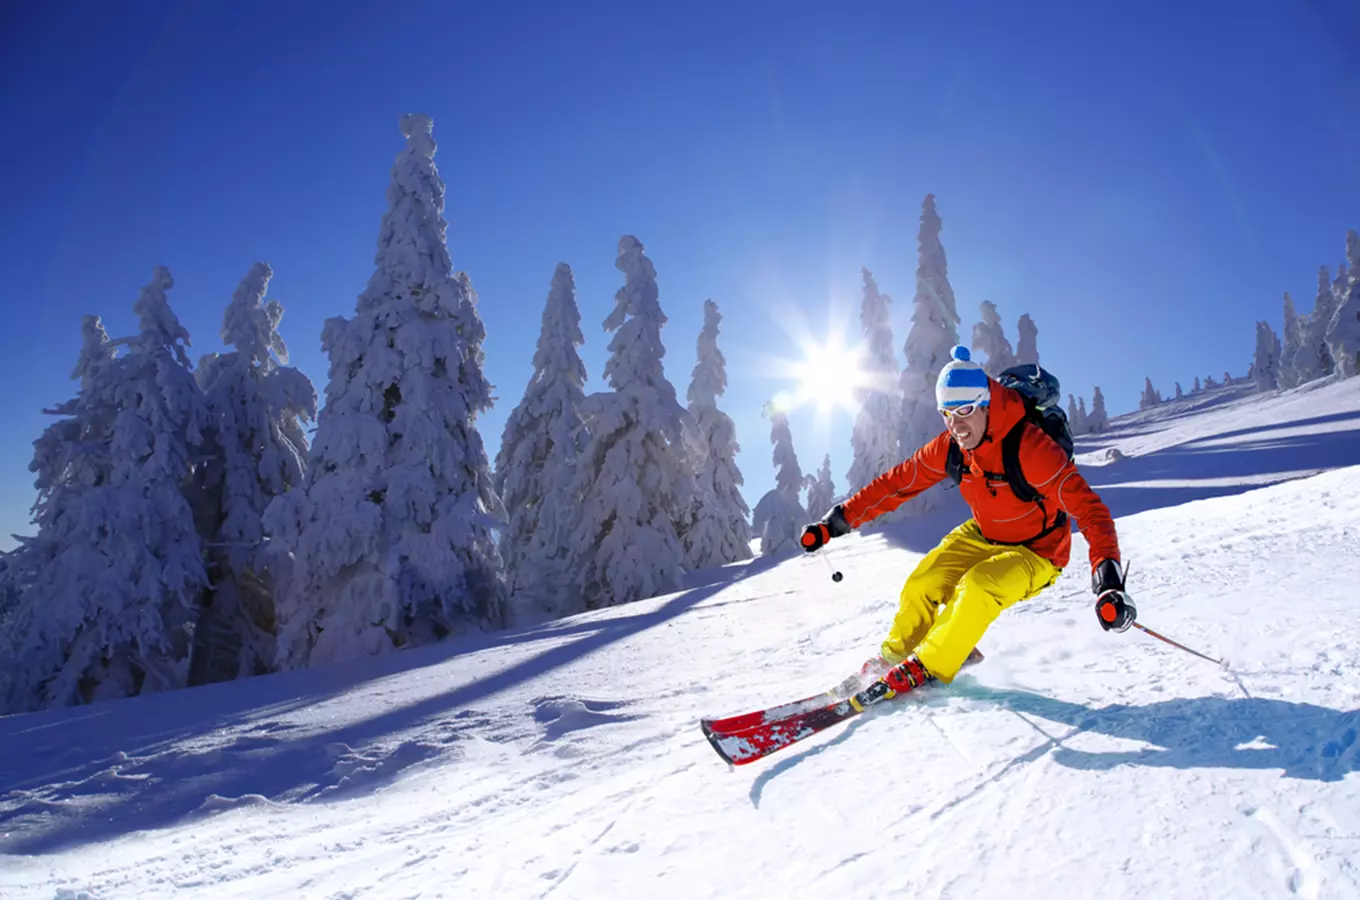 Zima a sníh je tu! 100 tipů, kam se vydat na lyže z celého Česka